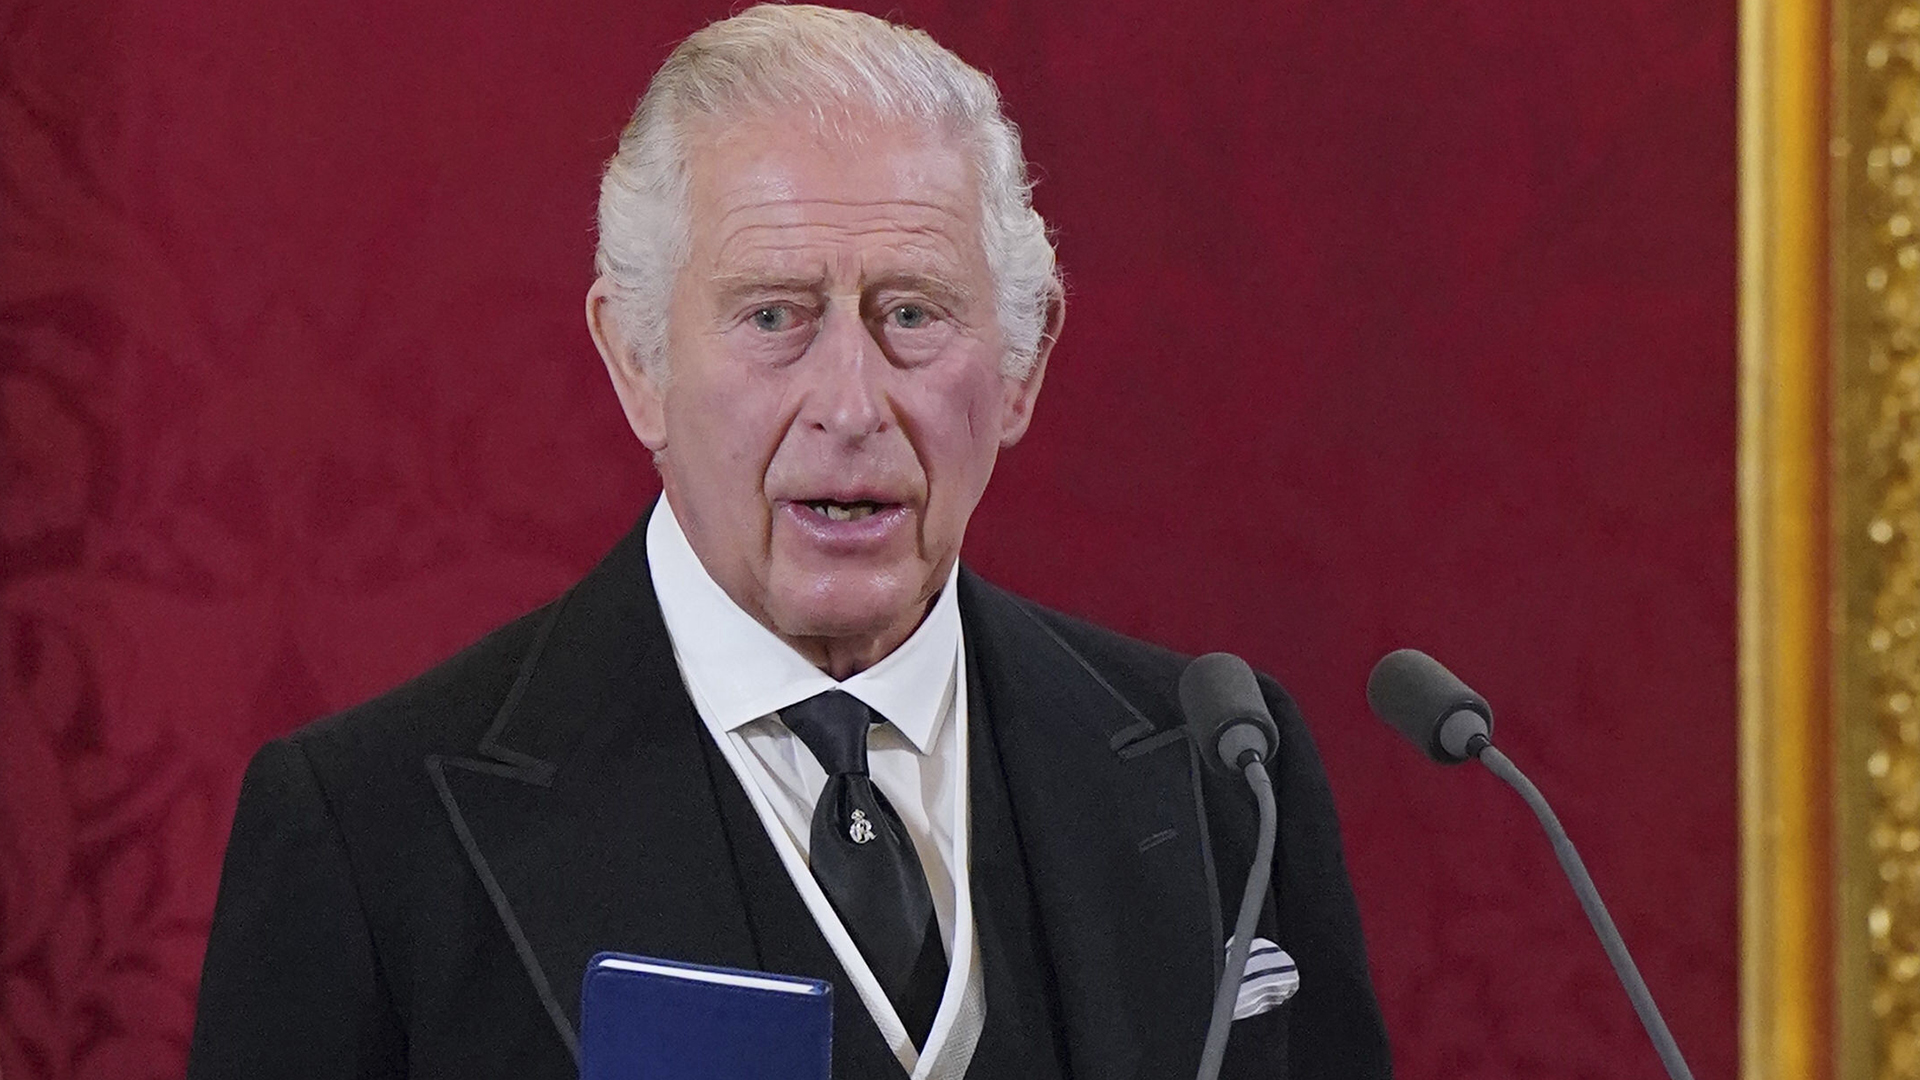 Le roi Charles III a été officiellement proclamé monarque britannique samedi